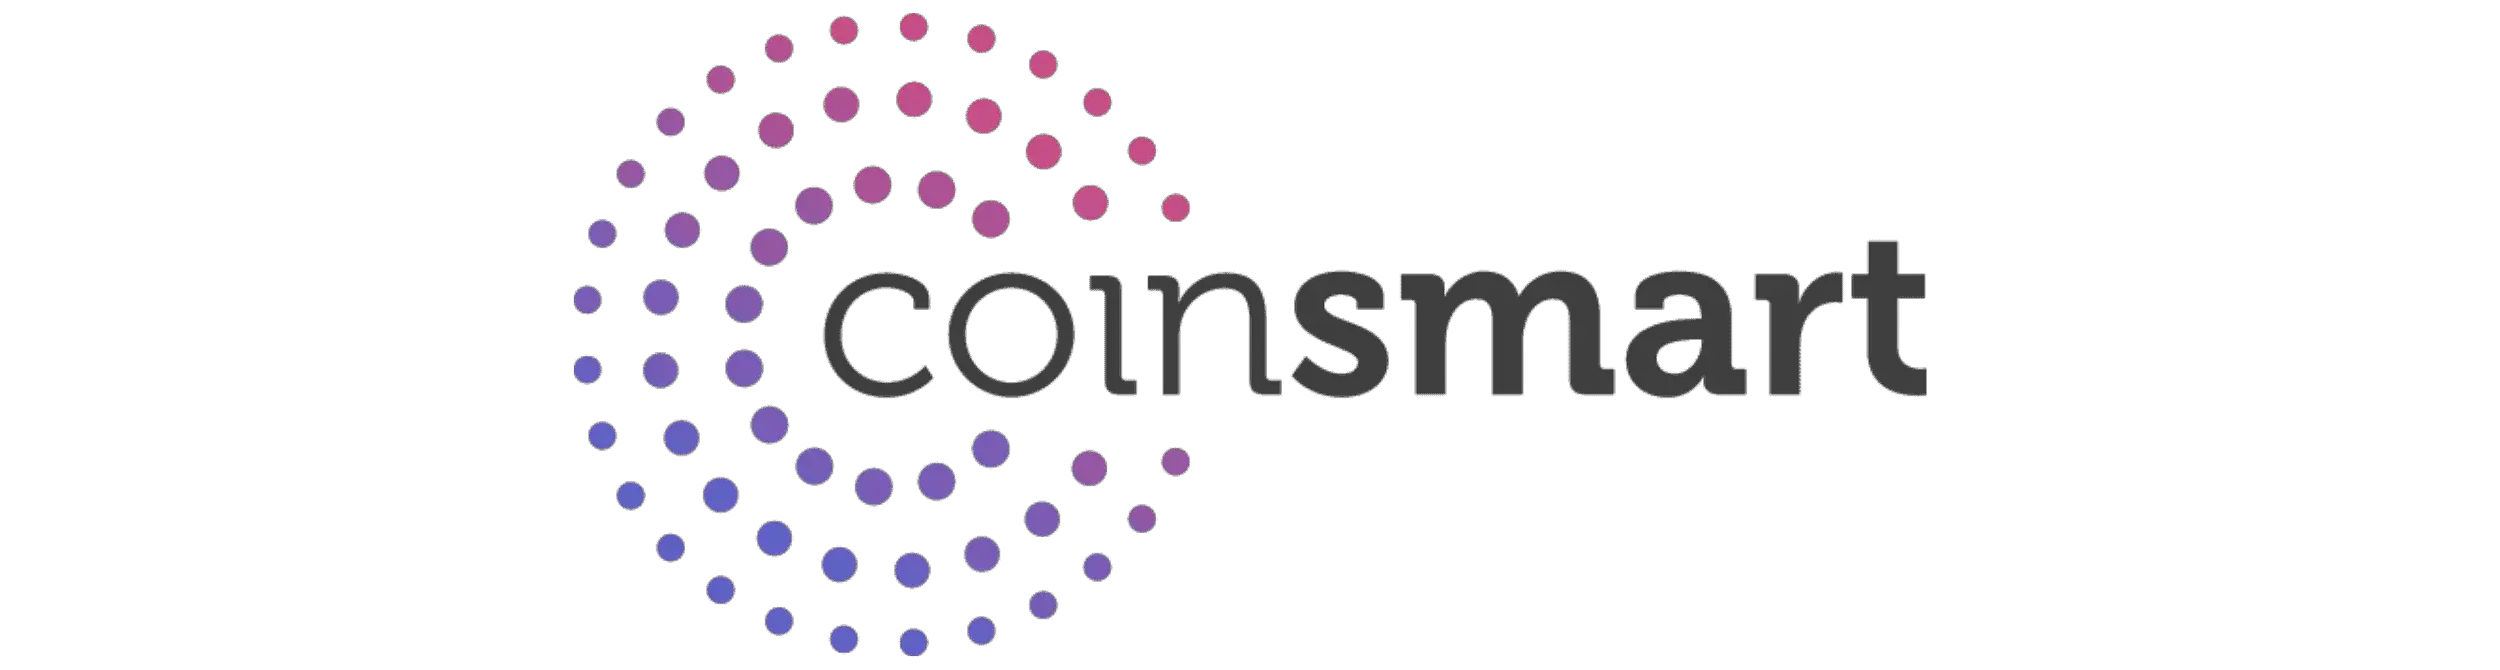 Coinsmart Logo